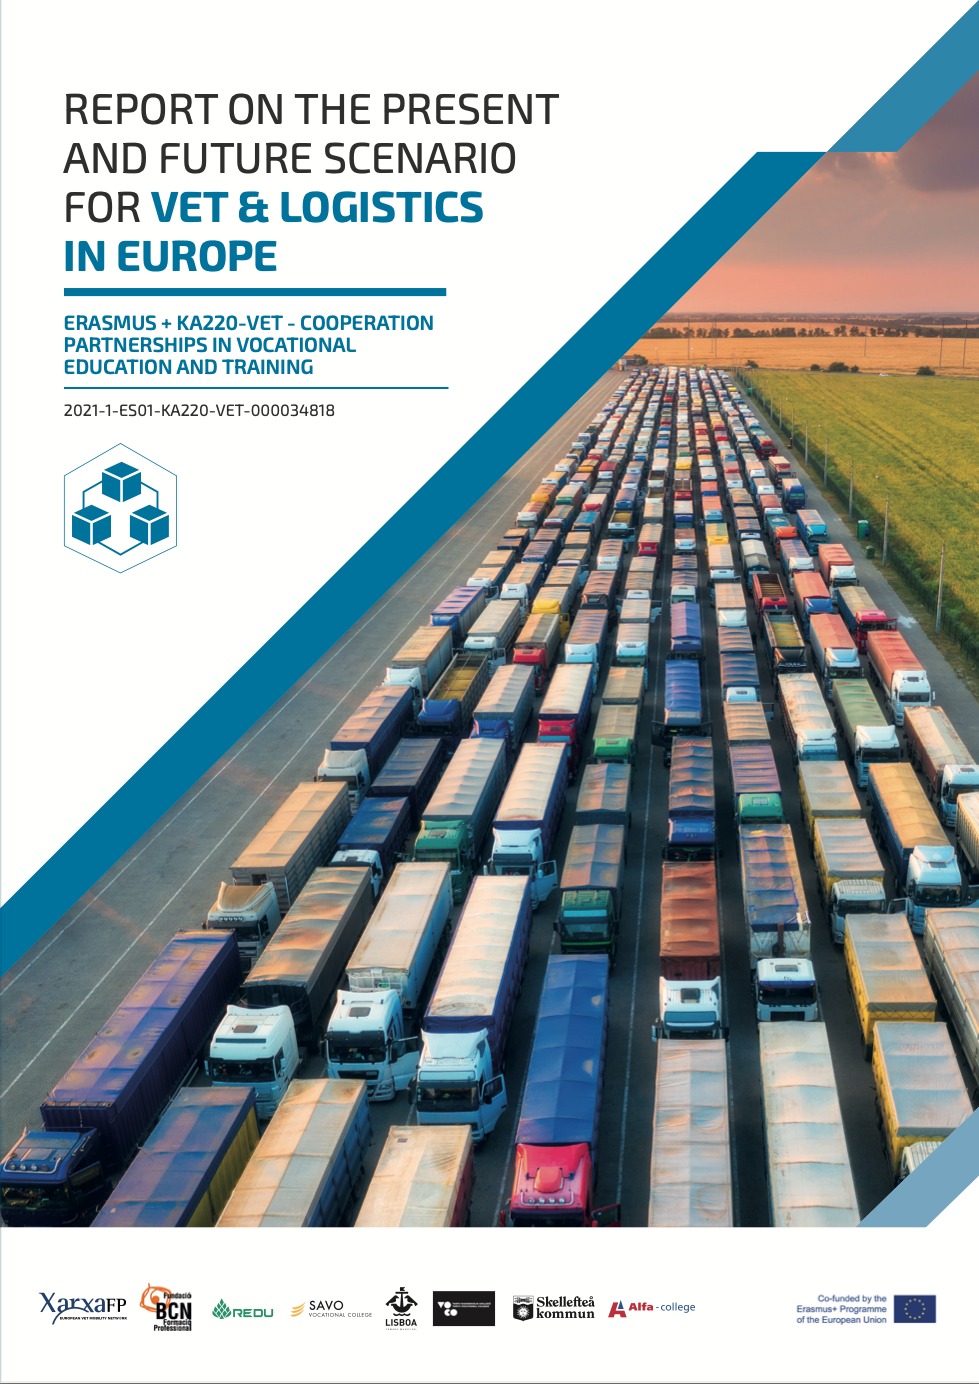 Present and future scenario of logistics and VET in Europe